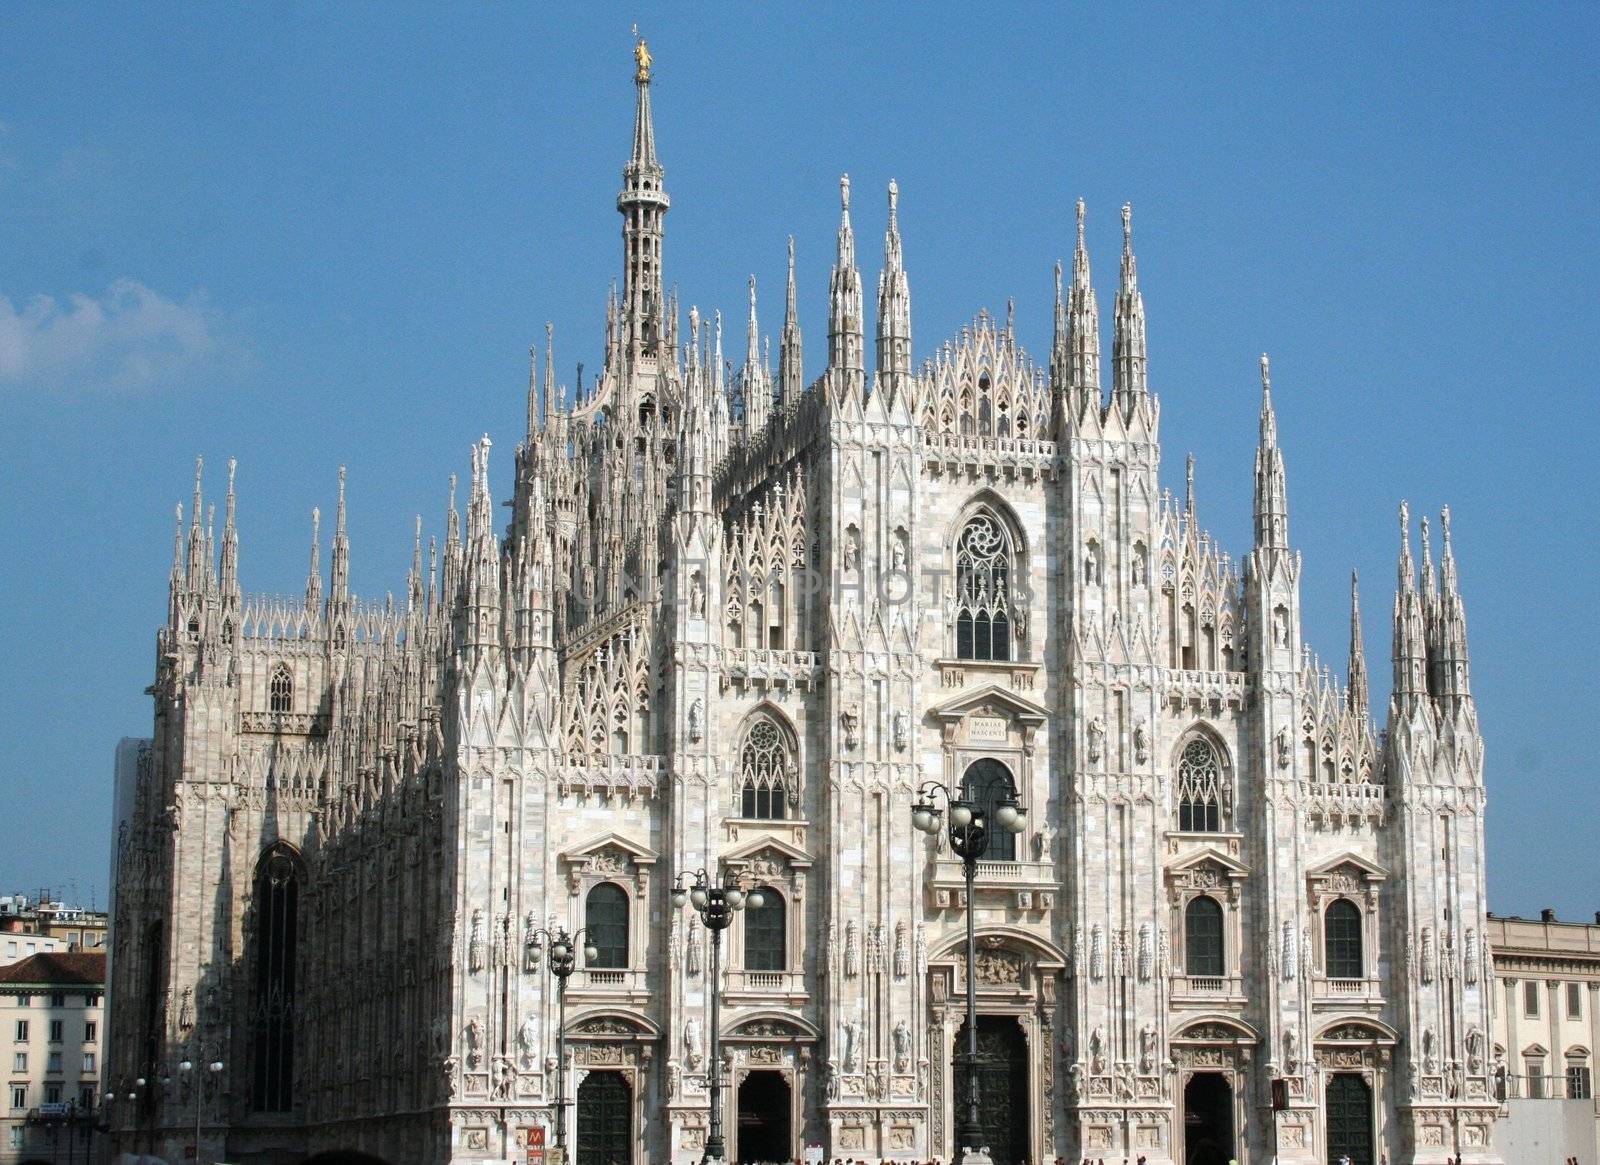 Duomo cathedral, Milan